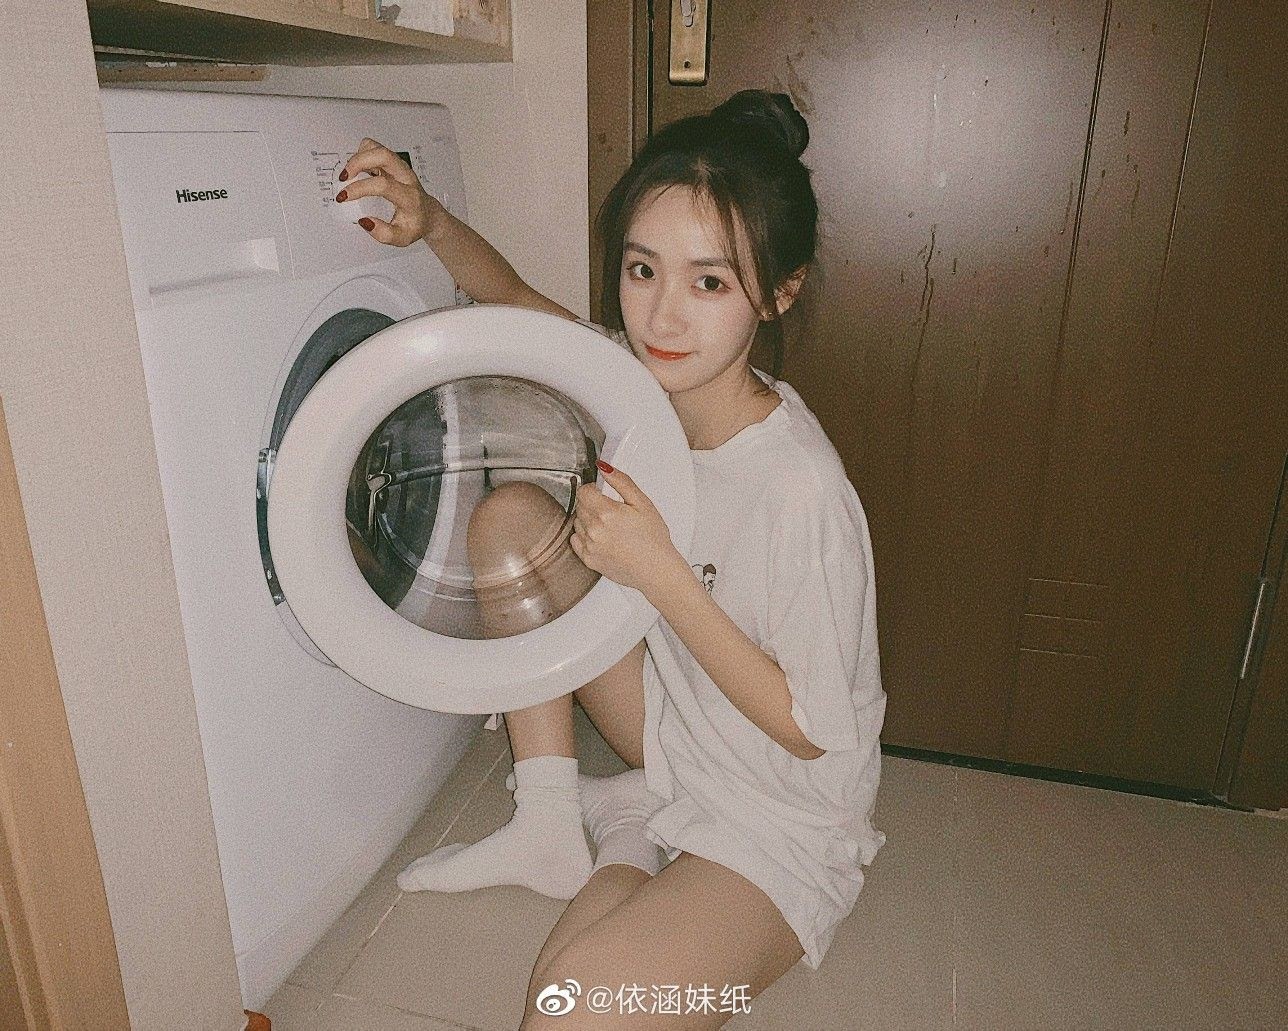 5 hành động dại dột khi sử dụng máy giặt khiến quần áo mãi không sạch, thậm chí còn chứa đầy vi khuẩn gây bệnh - Ảnh 1.